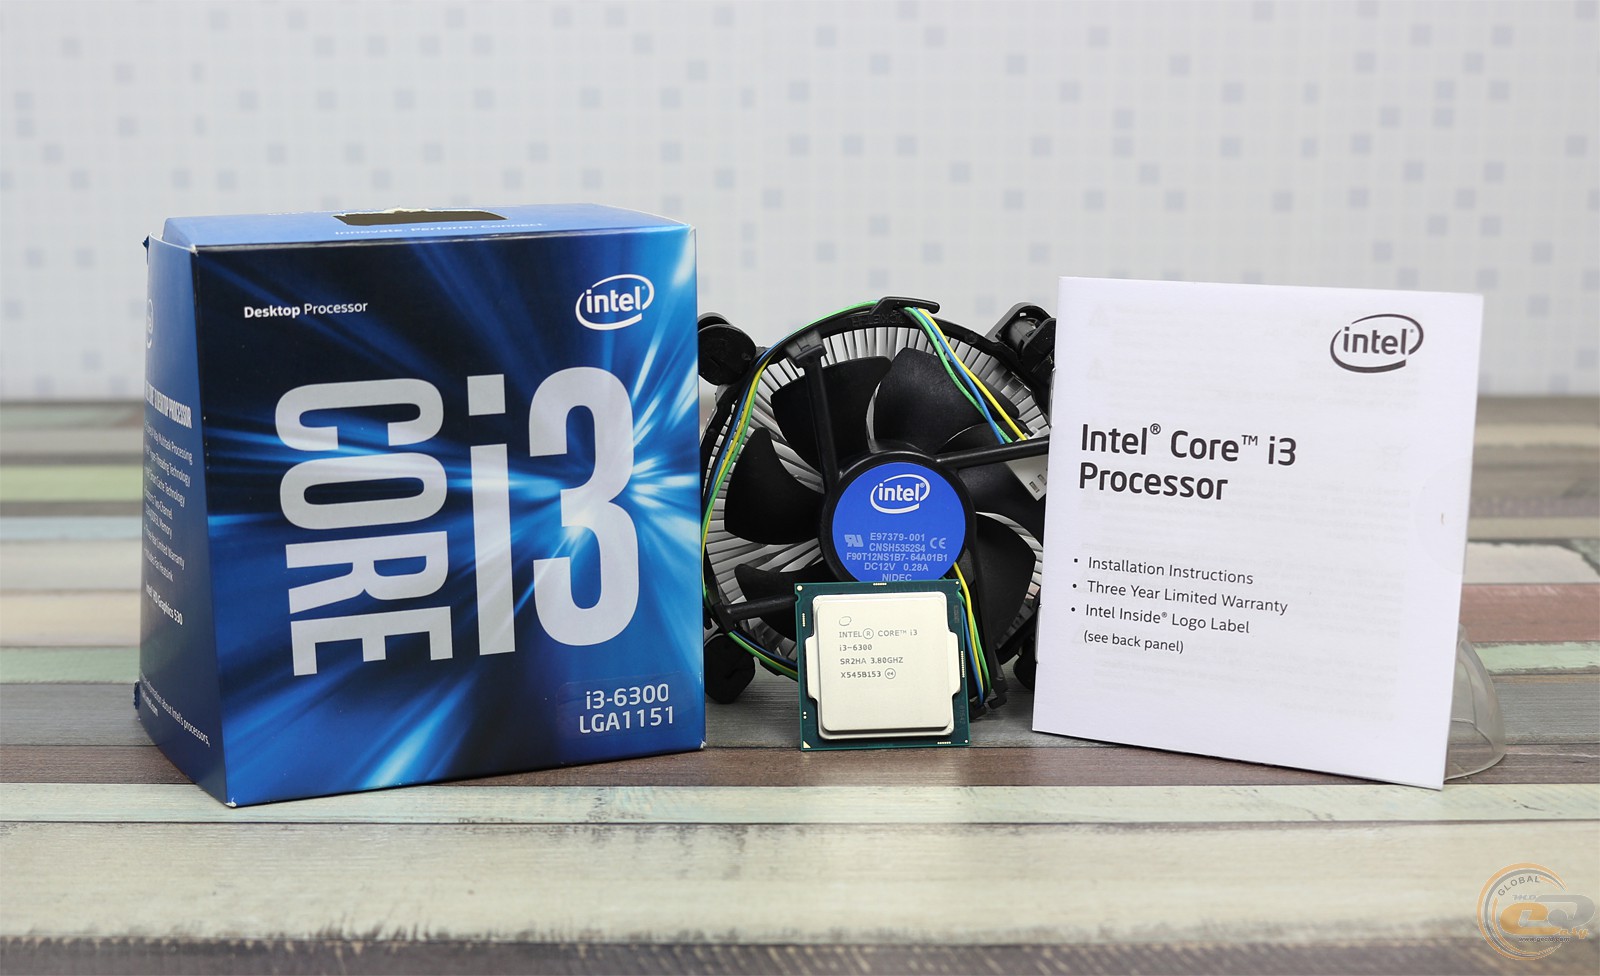 Интел core i3. Intel Core i3 6300. Intel Core i5-6400. Intel Core i3-6300 Skylake lga1151, 2 x 3800 МГЦ. Intel Core i3-6100.